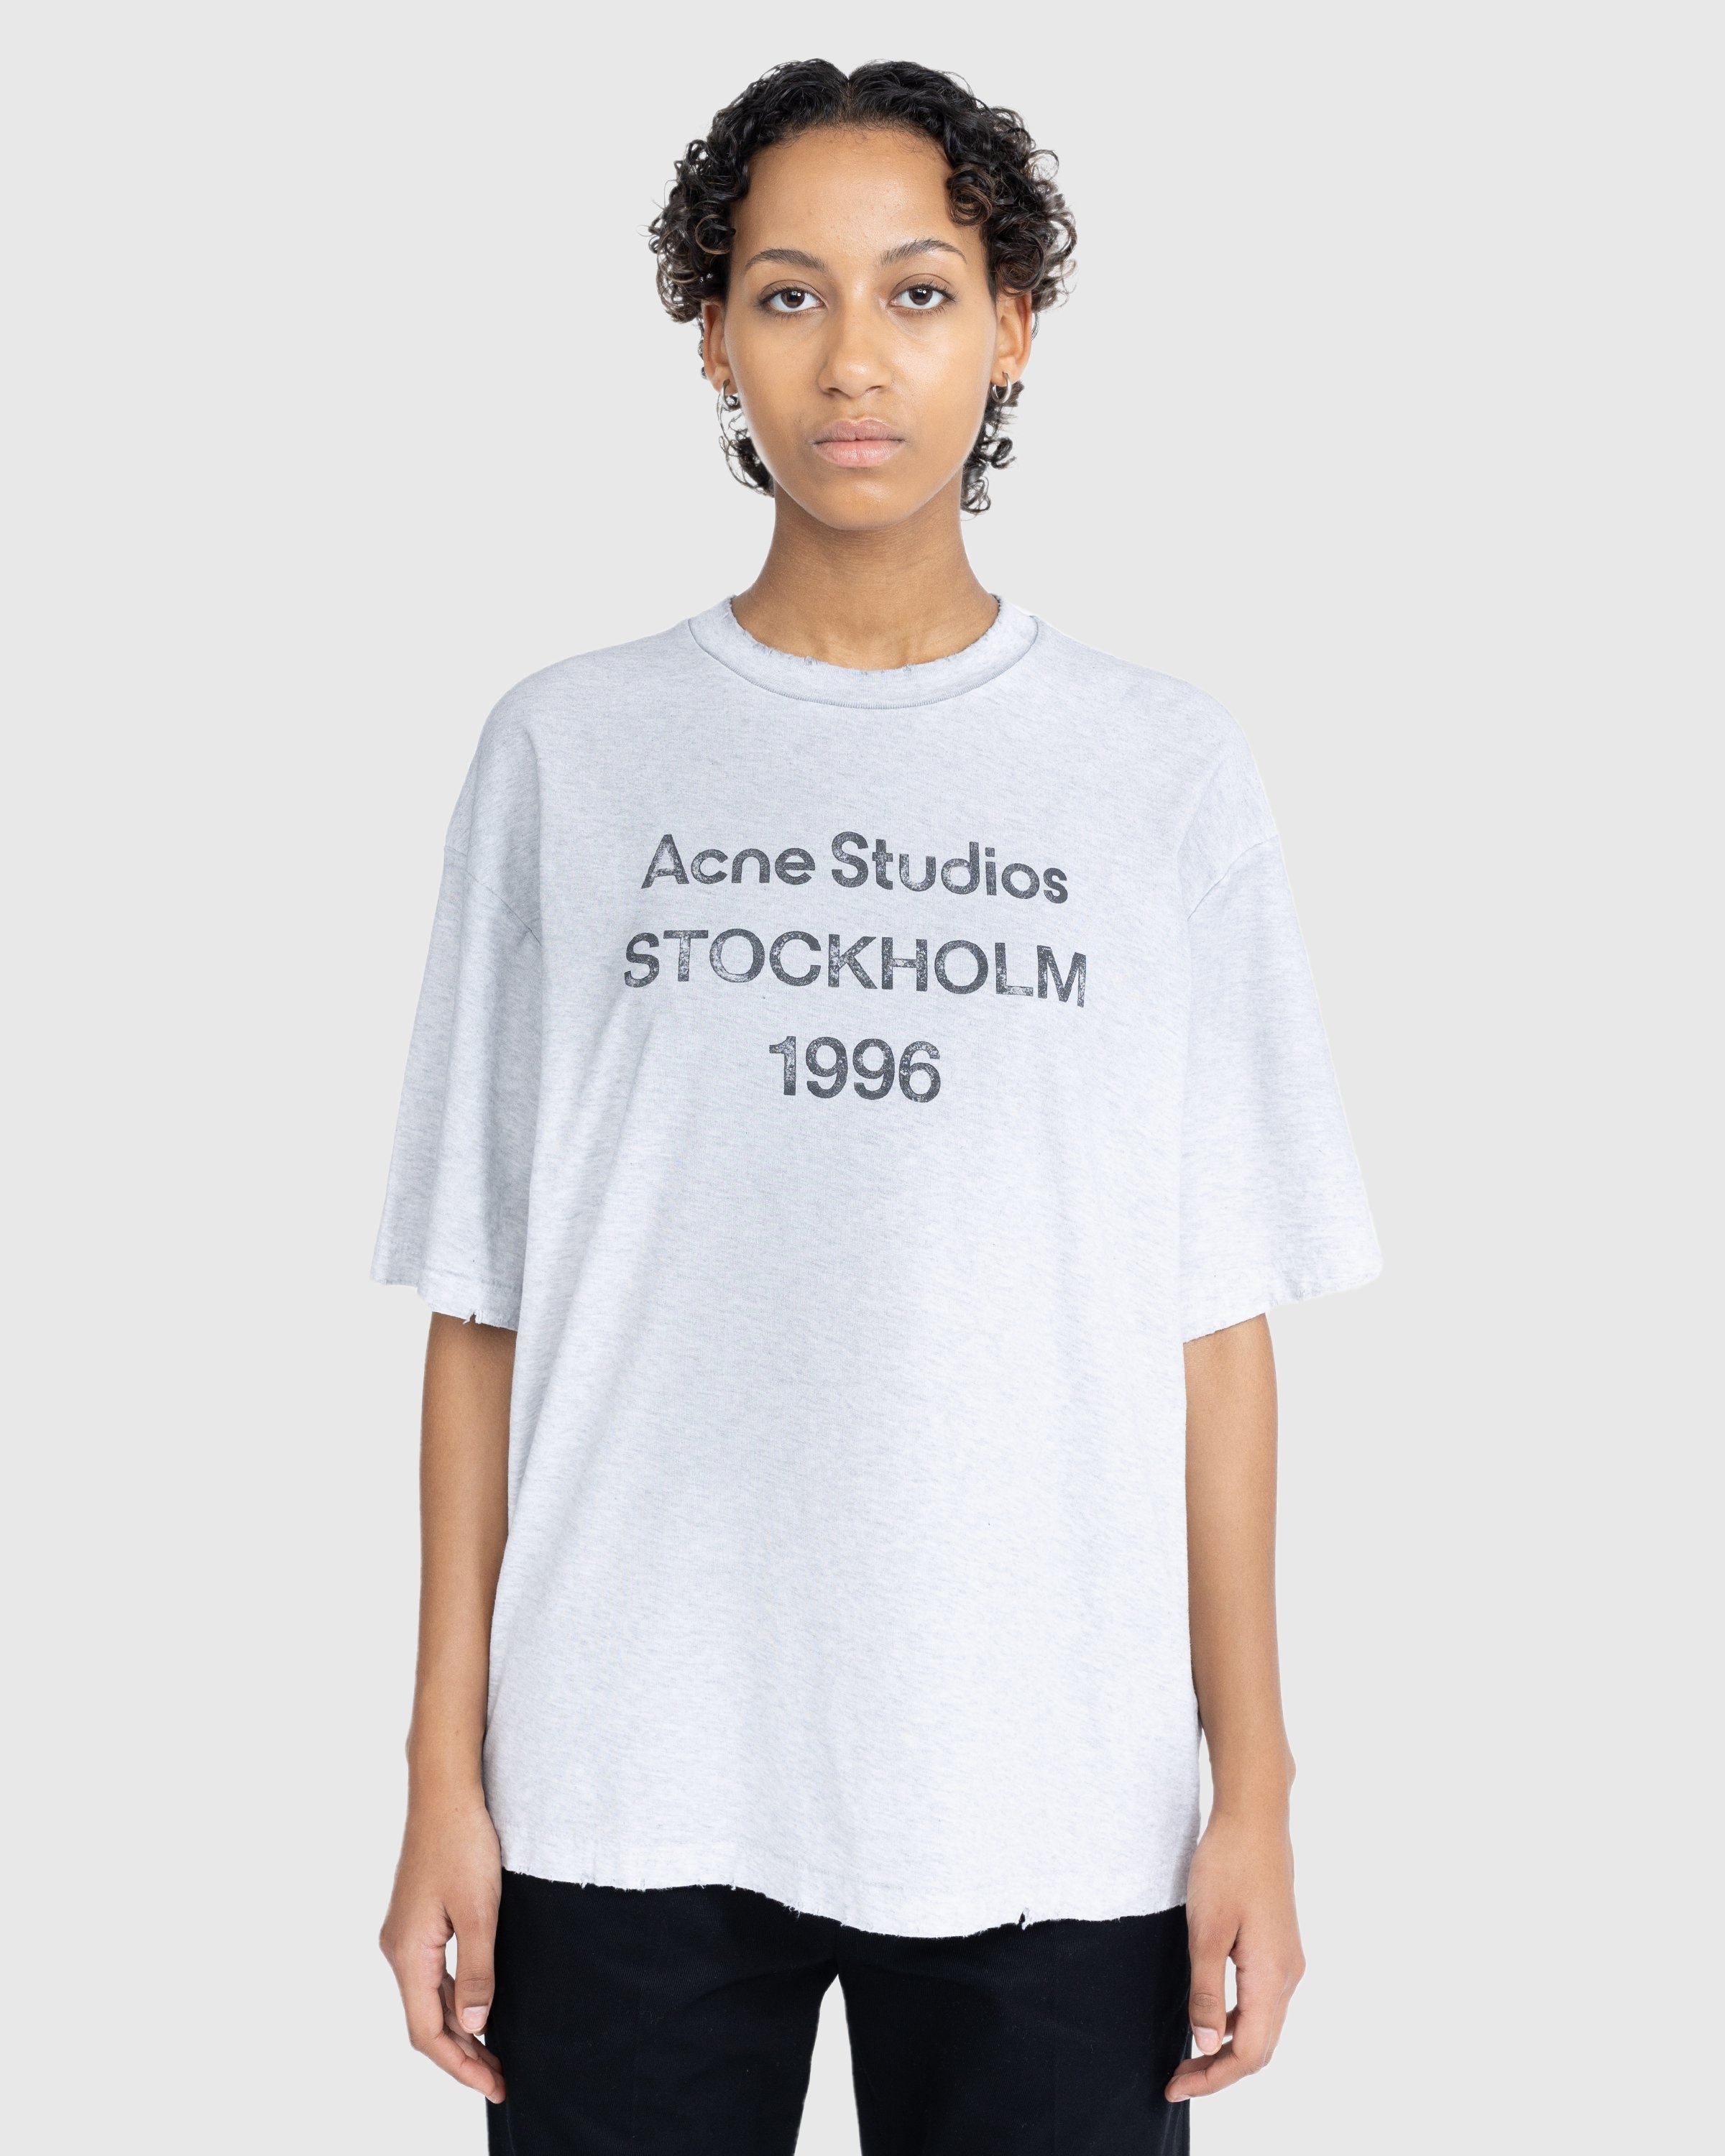 Acne Studios – Stockholm T-Shirt Grey | Highsnobiety